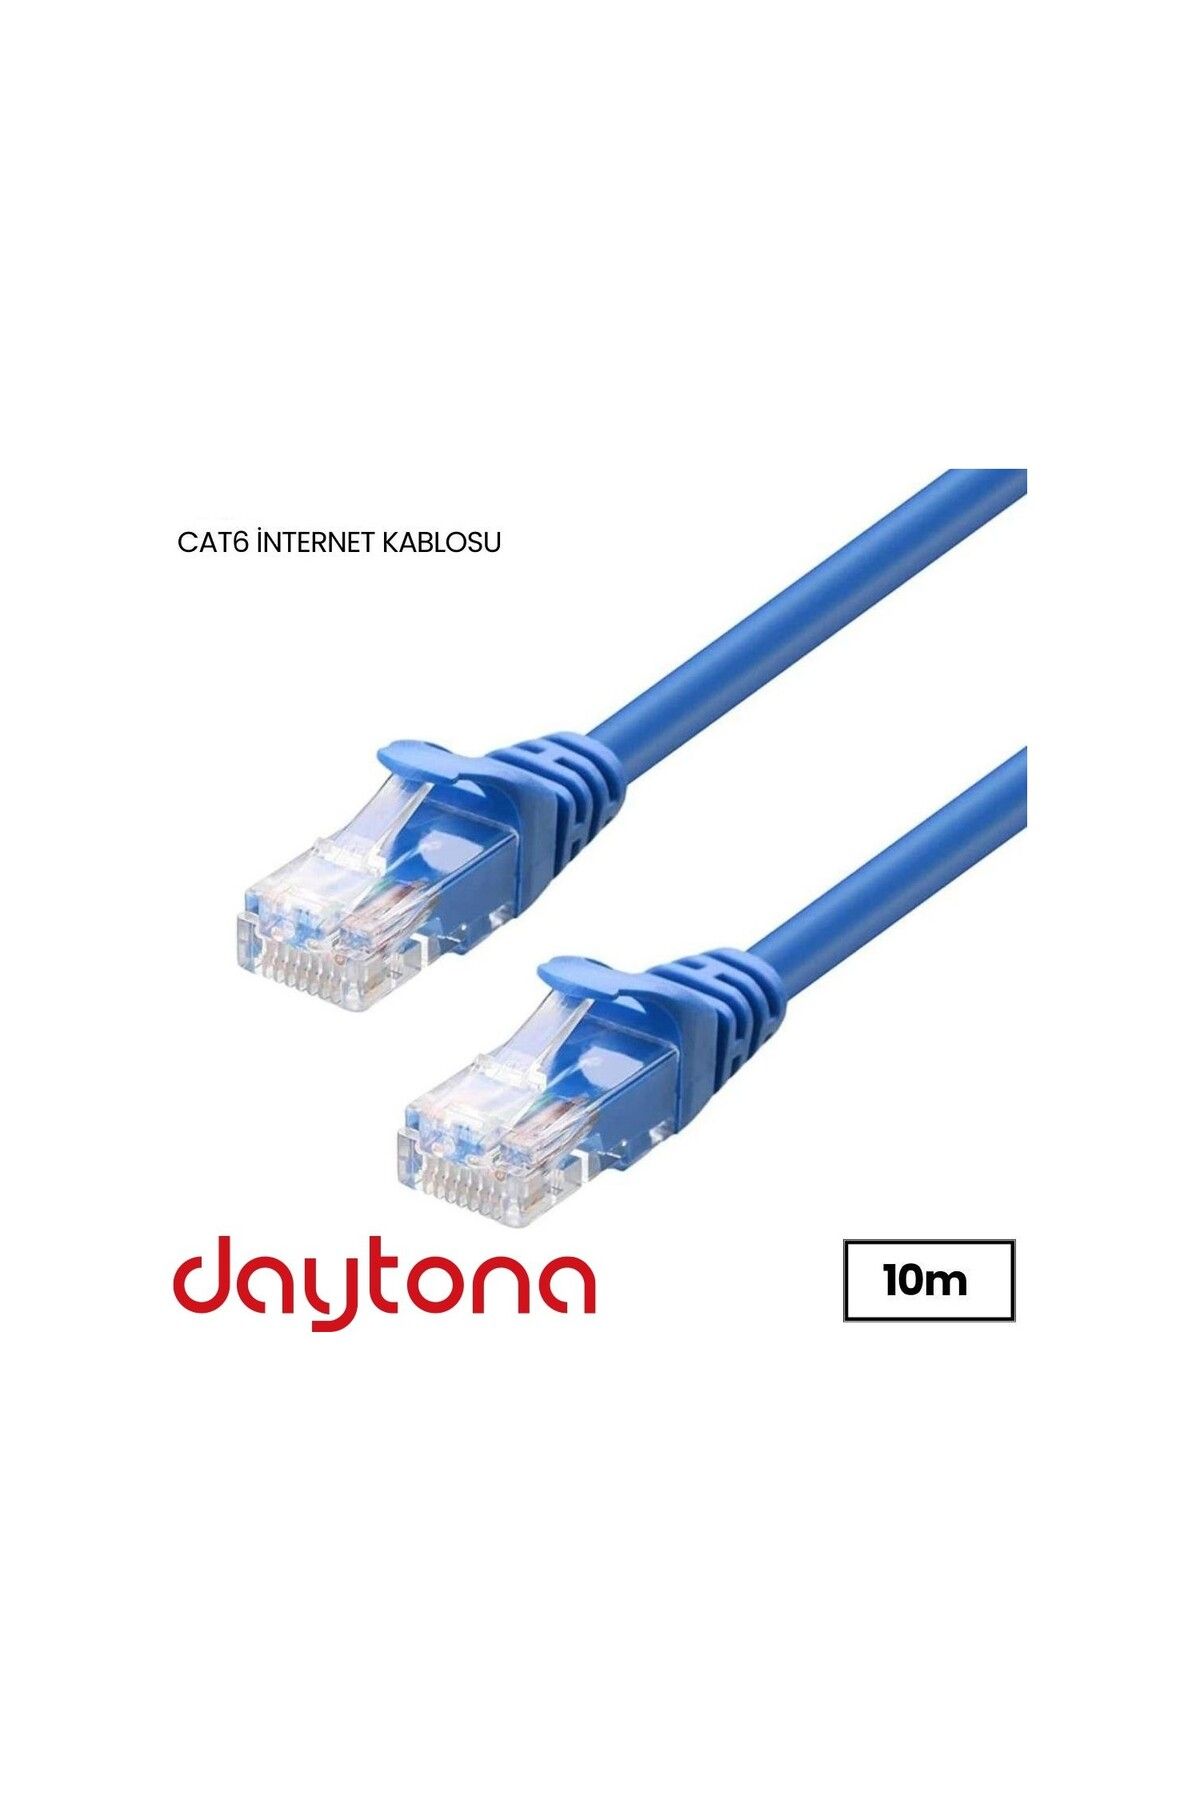 Daytona A4937 Cat6 Gigabit Internet Ethernet 10gbps Rj45 Lan Kablosu (10 METRE)